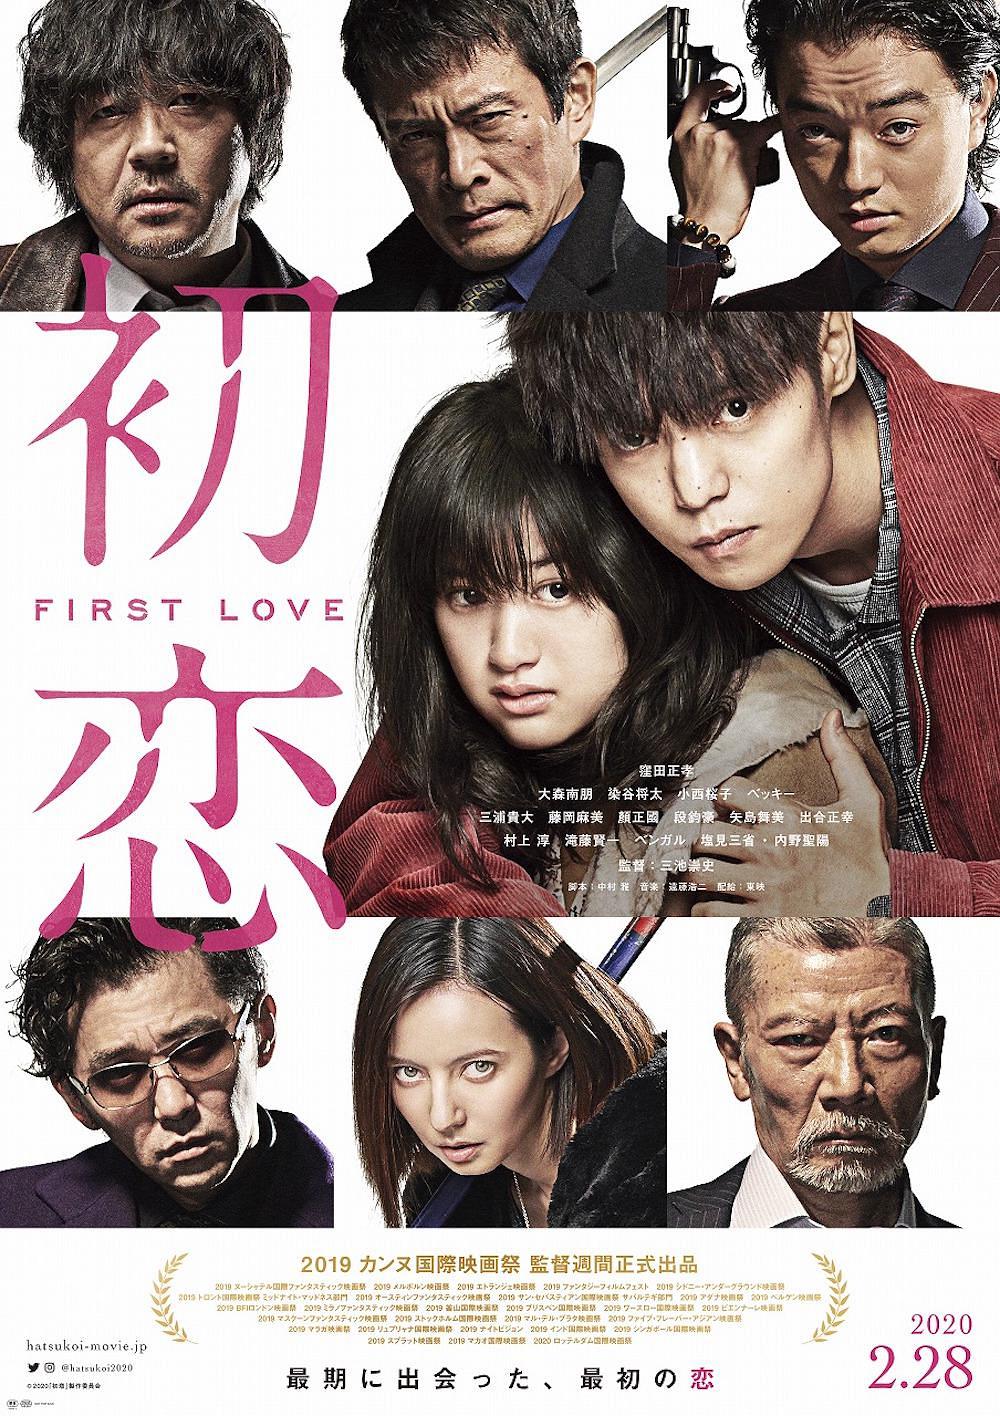 初恋 蓝光原盘下载+高清MKV版/First Love 2019 初恋 21.1G